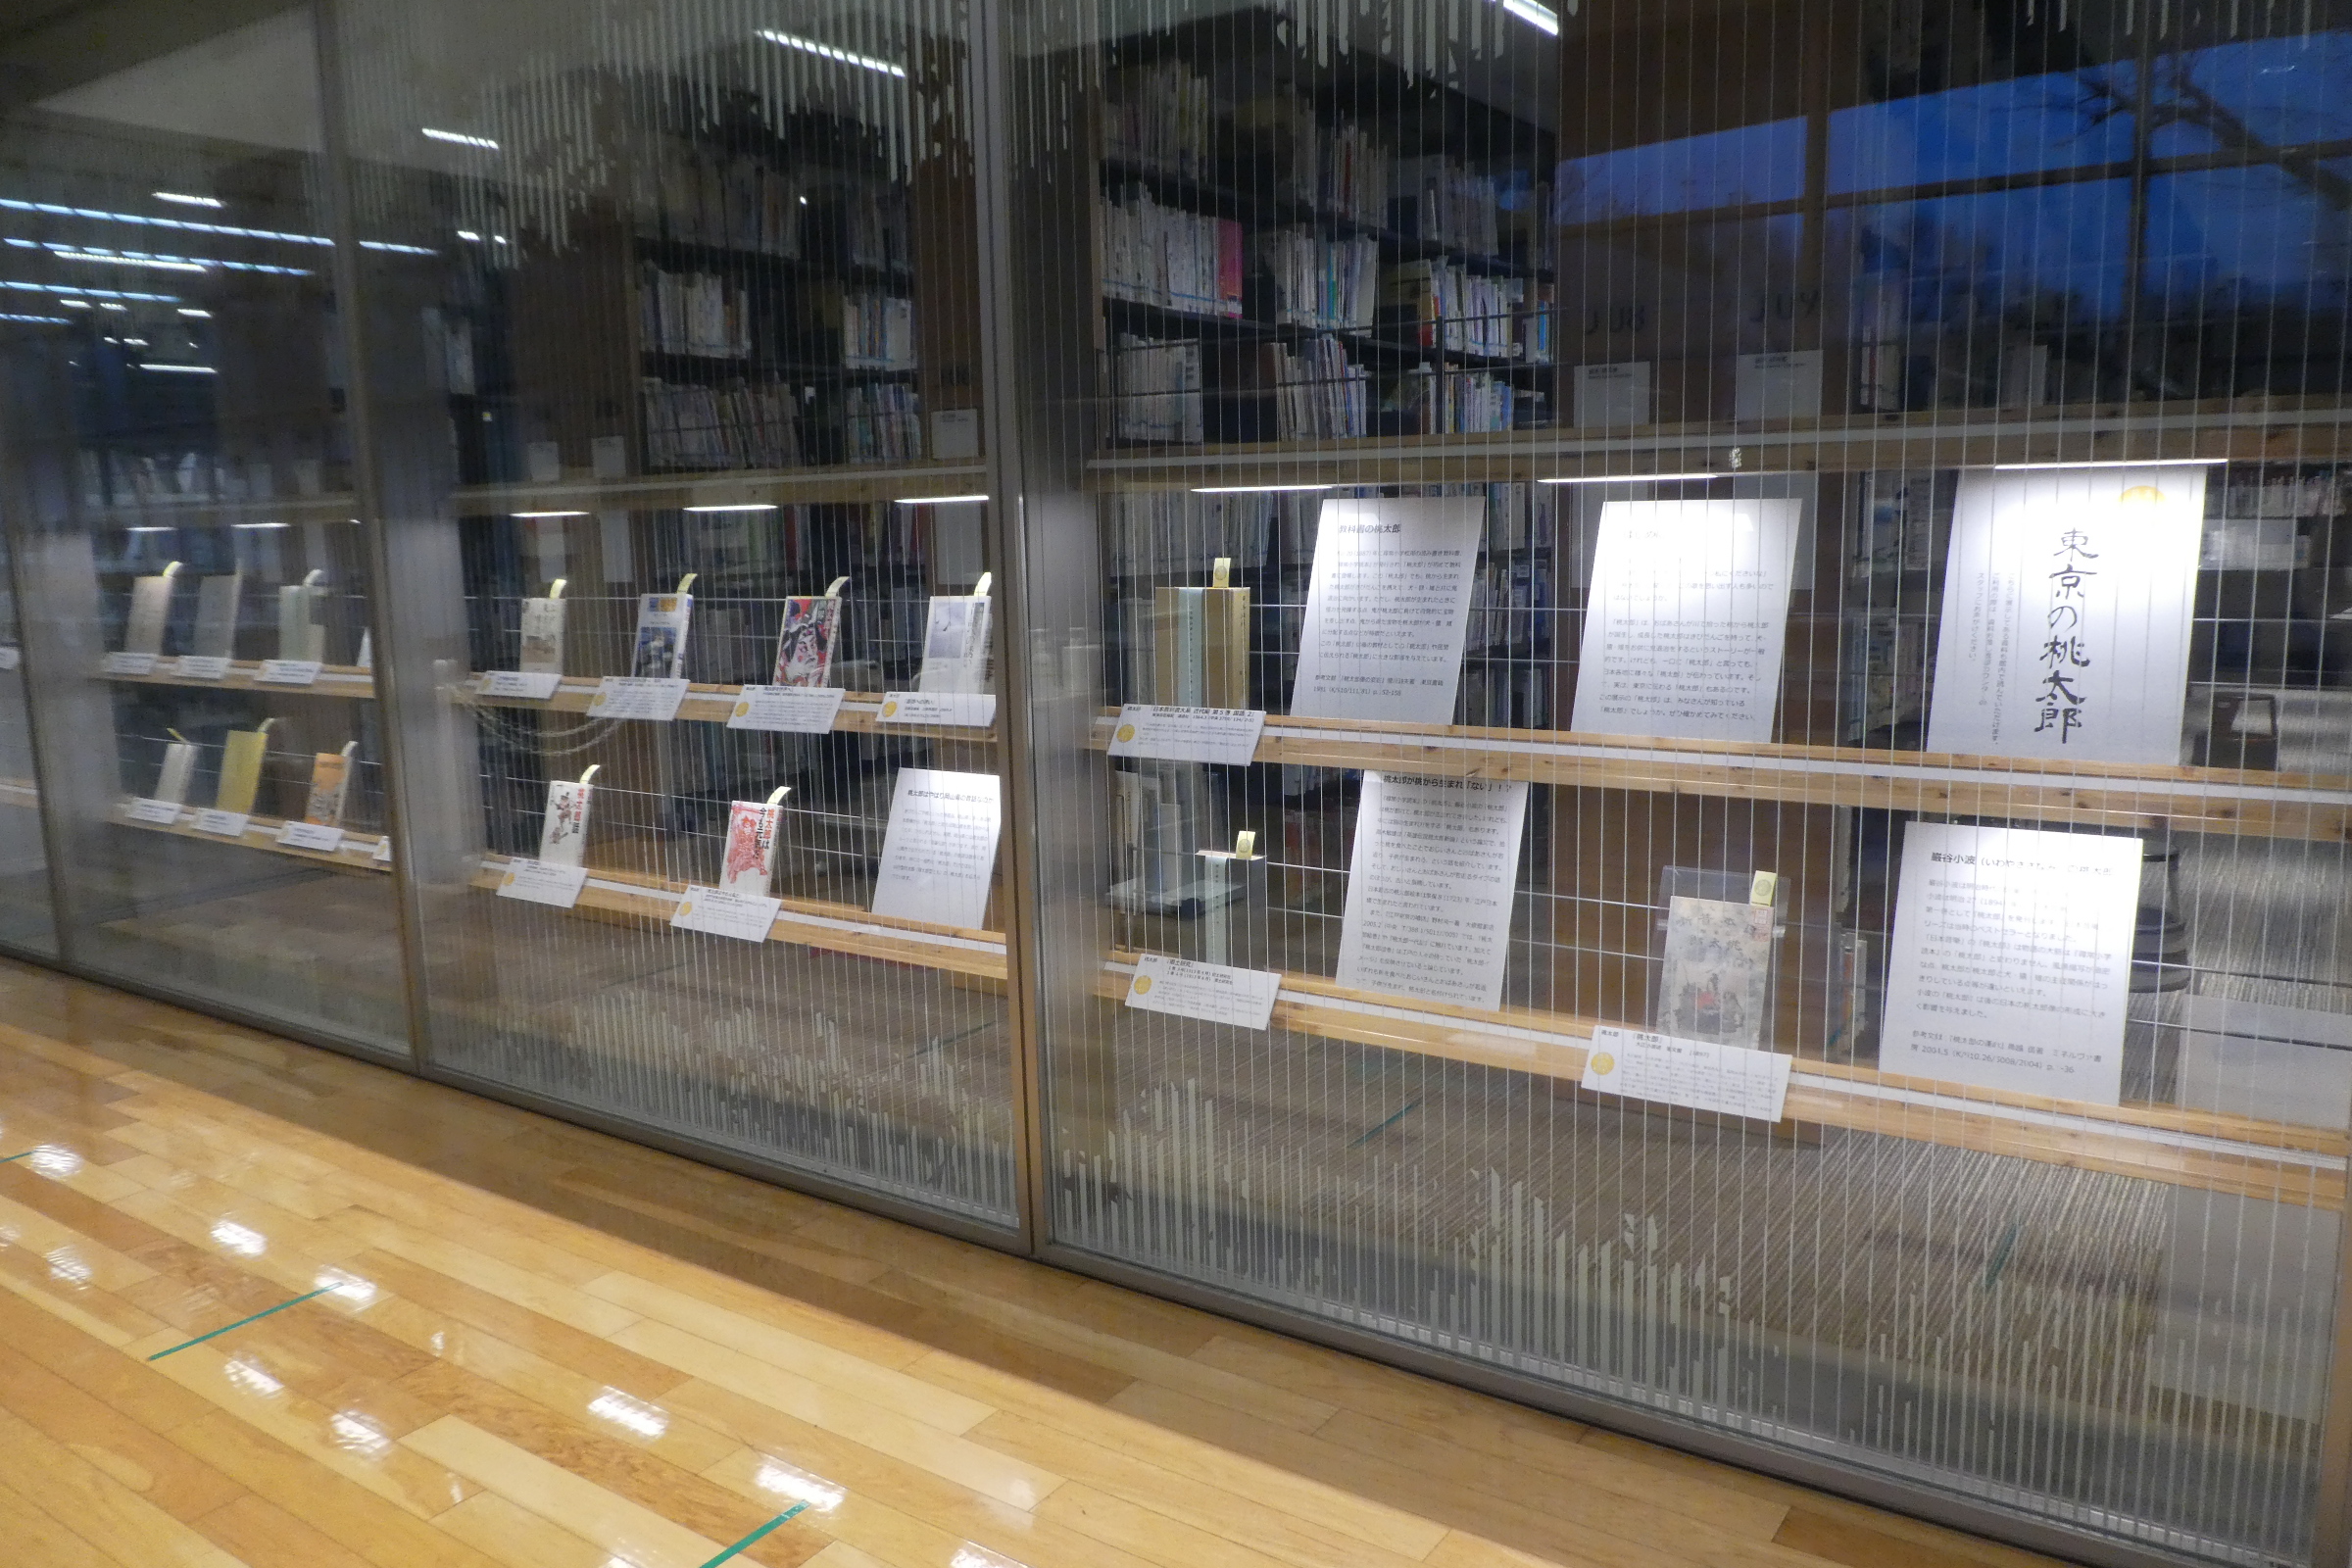 開架書庫ガラス展示　東京の桃太郎の展示の様子